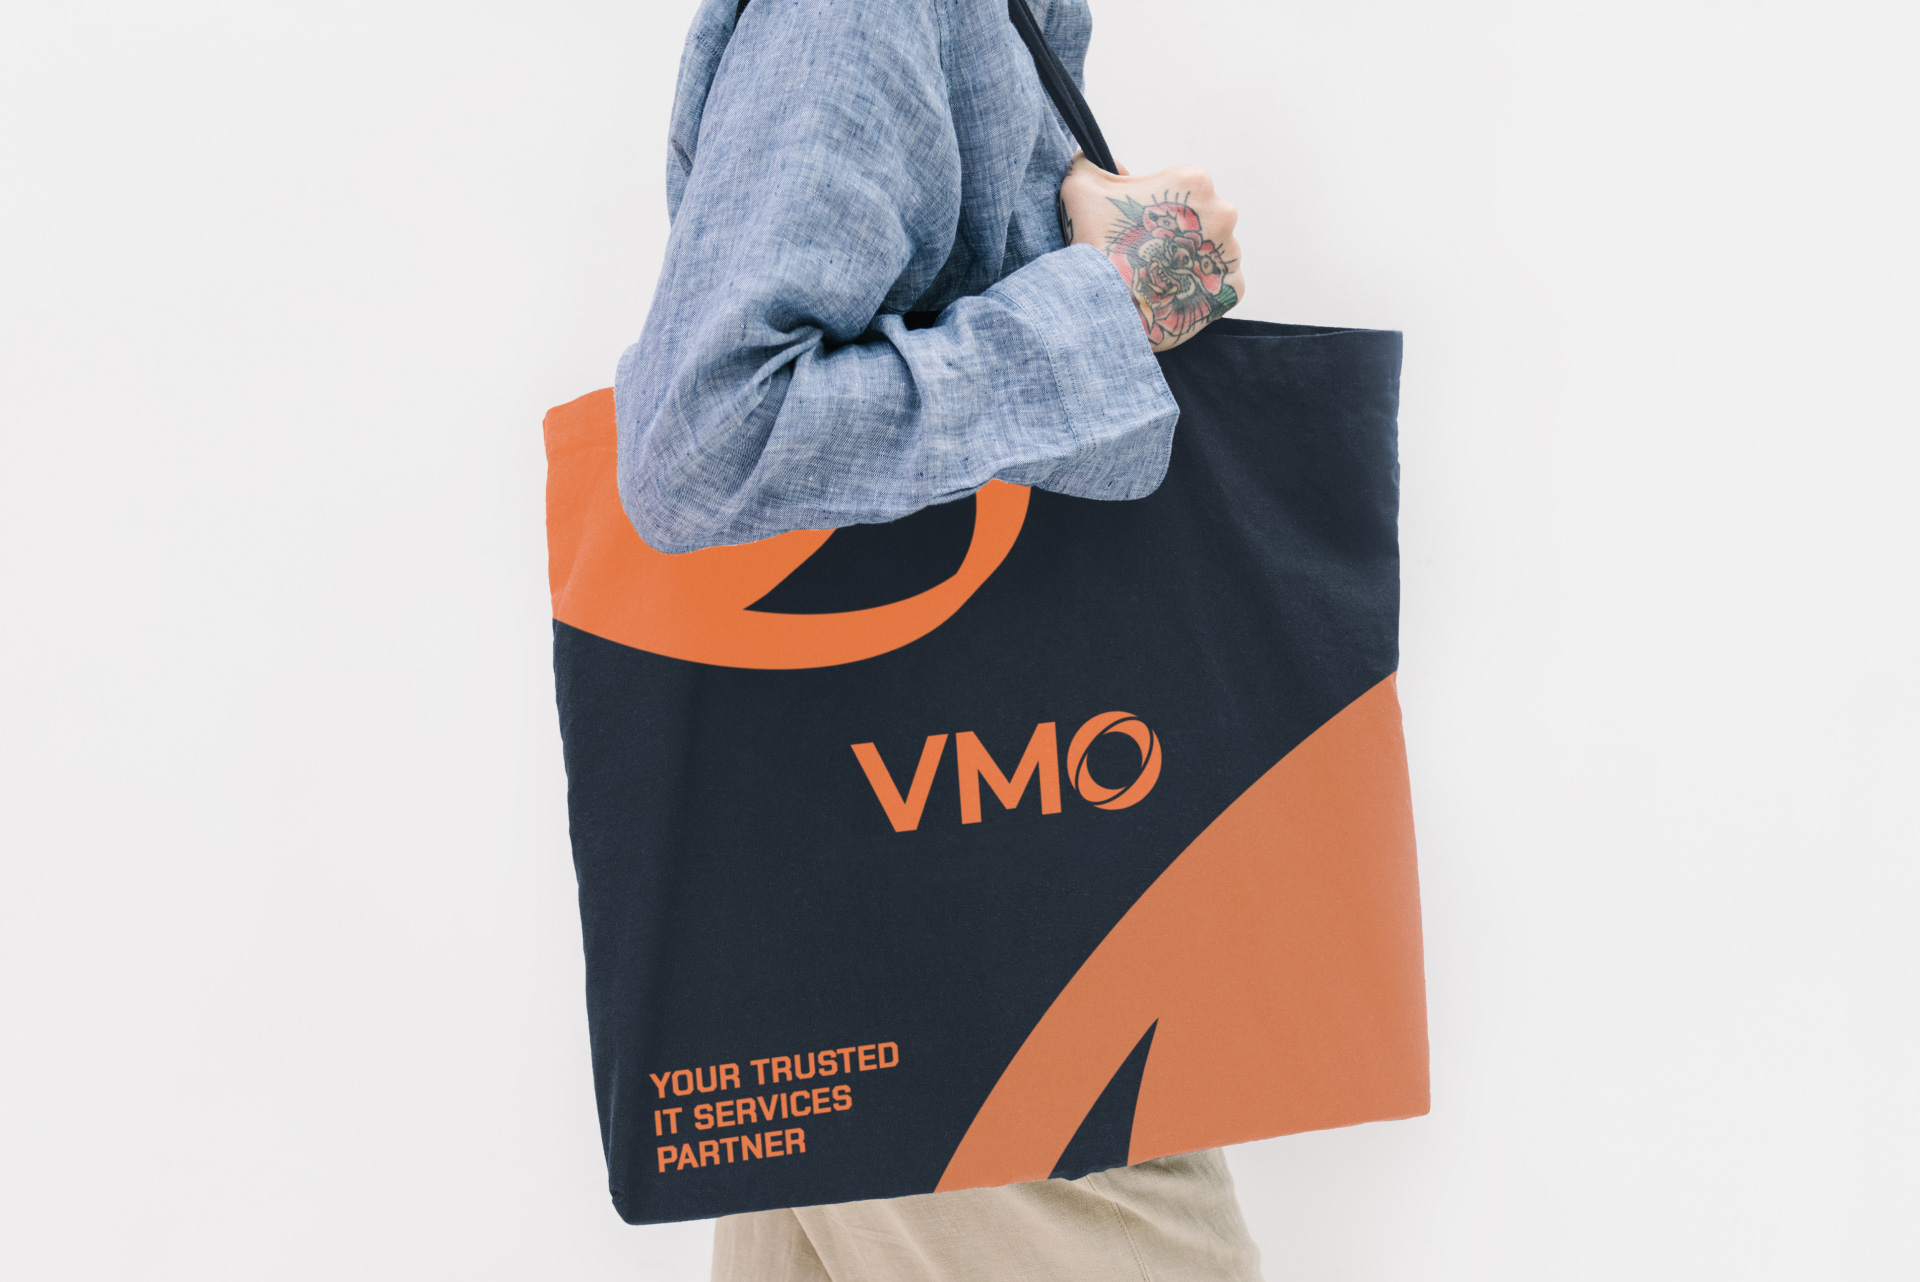 VMO Brand Identity by Brandex